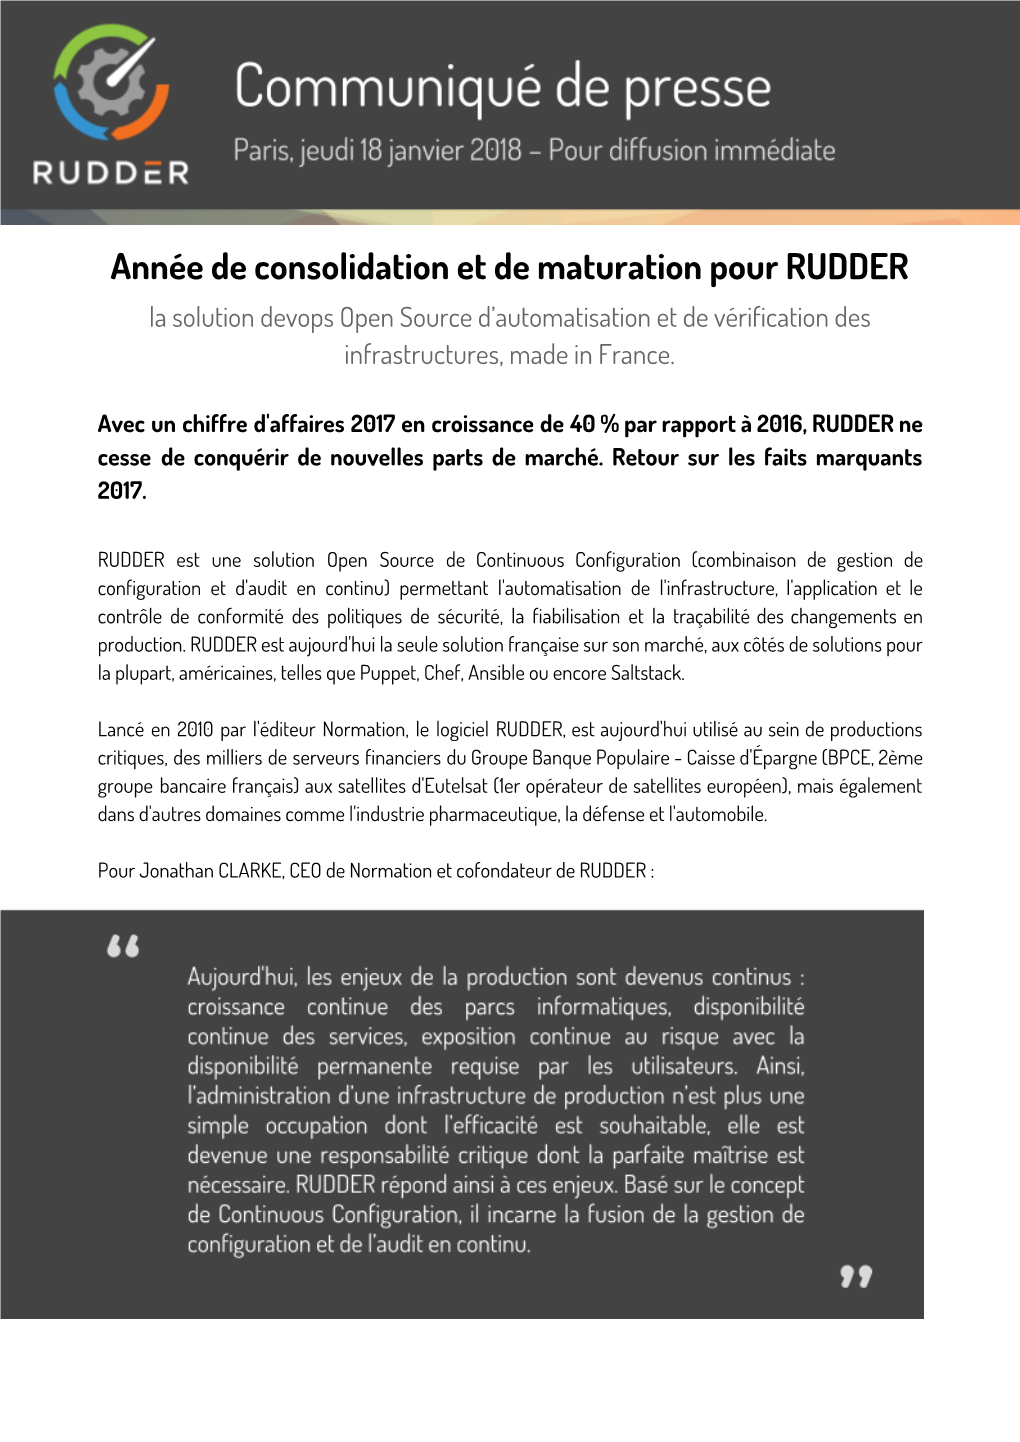 Année De Consolidation Et De Maturation Pour RUDDER La Solution Devops Open Source D’Automatisation Et De Vérification Des Infrastructures, Made in France